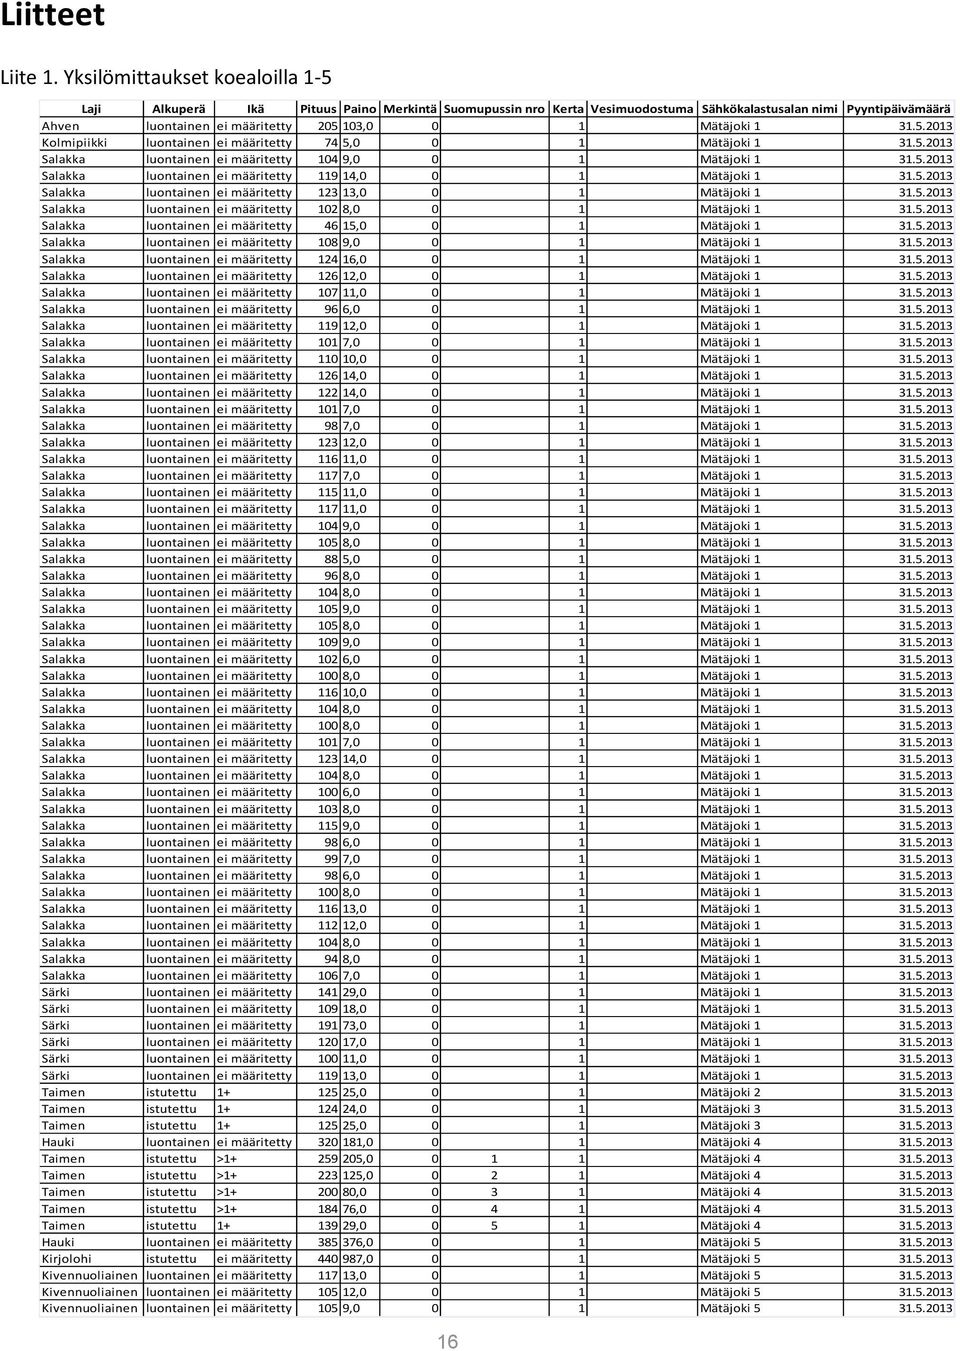 Mätäjoki 1 31.5.2013 Kolmipiikki luontainen ei määritetty 74 5,0 0 1 Mätäjoki 1 31.5.2013 Salakka luontainen ei määritetty 104 9,0 0 1 Mätäjoki 1 31.5.2013 Salakka luontainen ei määritetty 119 14,0 0 1 Mätäjoki 1 31.